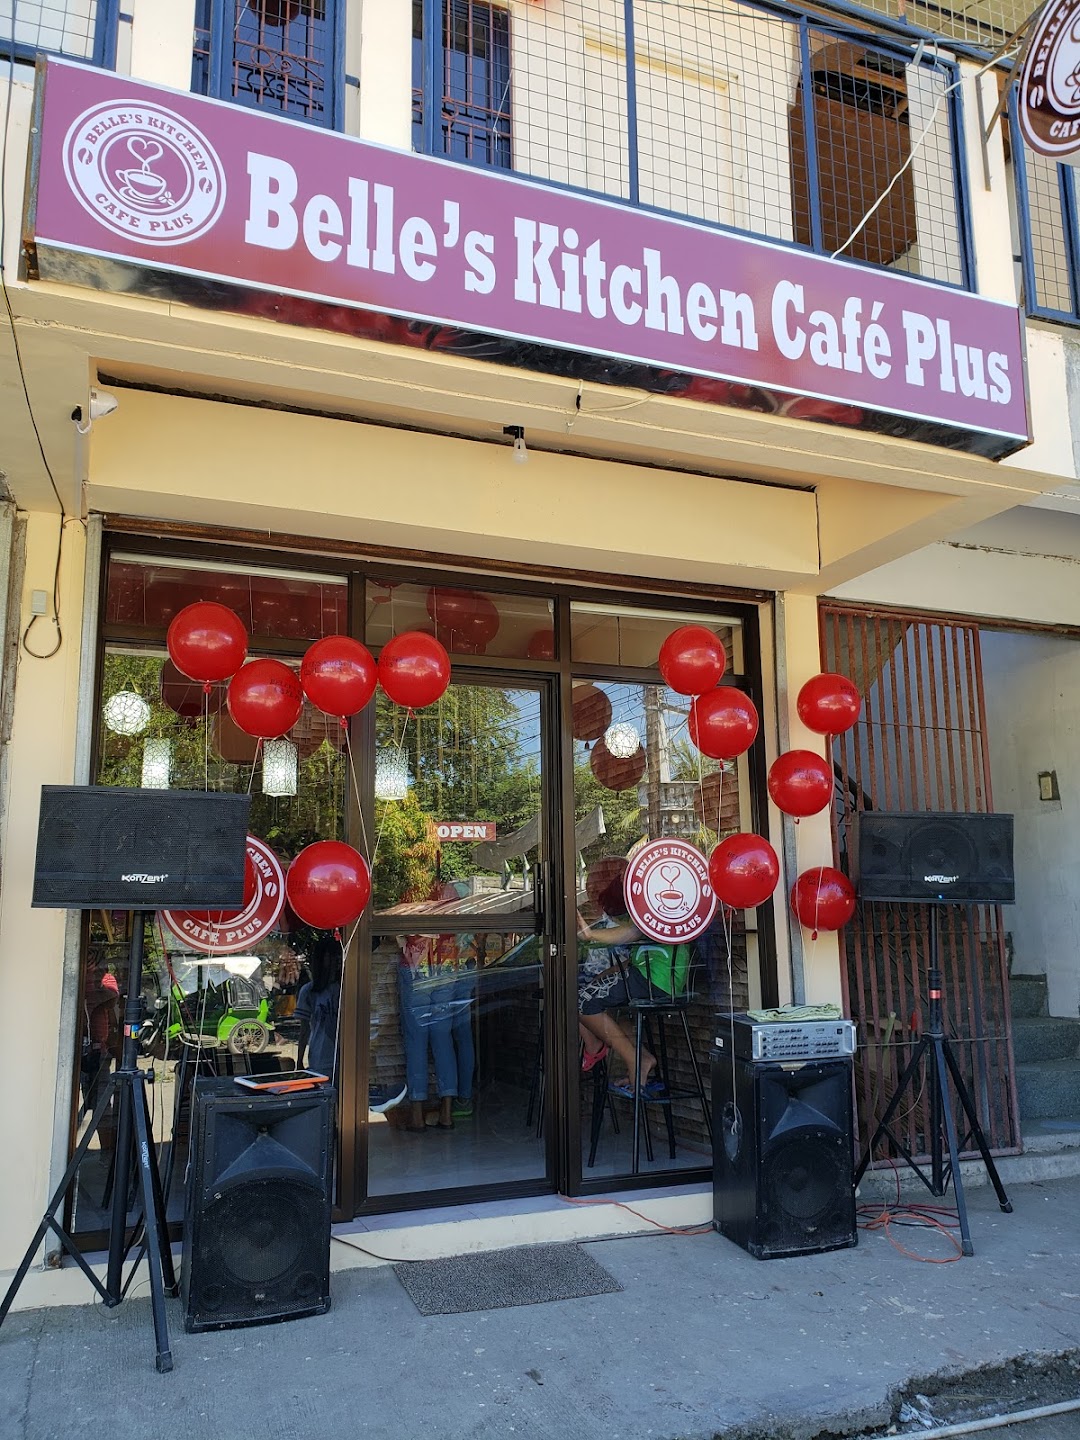 Belles Kitchen Cafe Plus